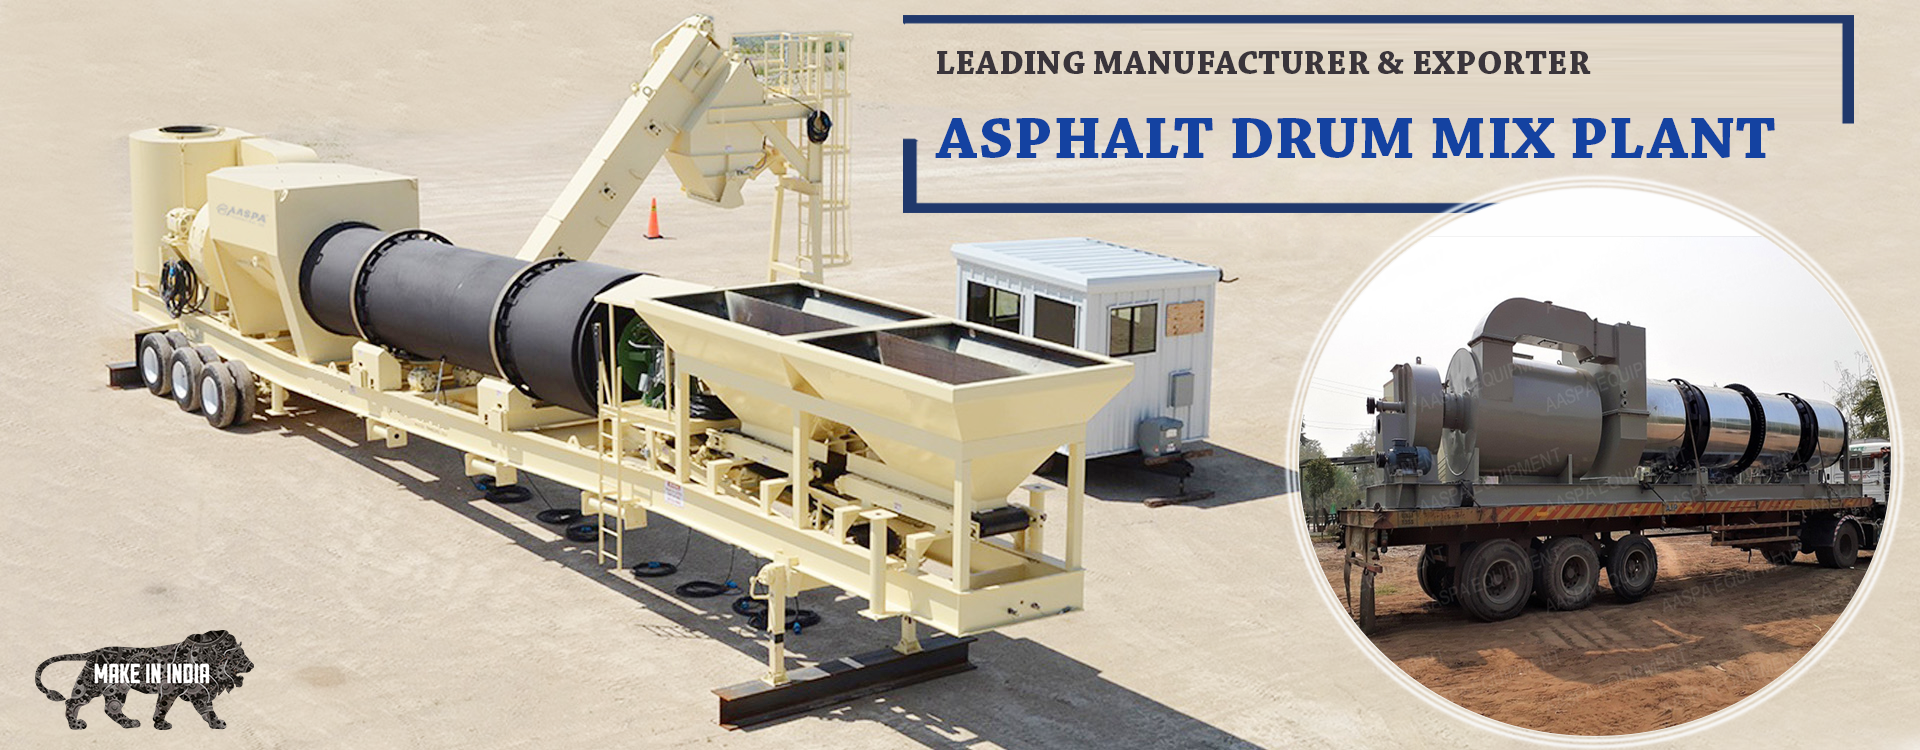 Asphalt Drum Mix Plant Manufacturer, Supplier and Exporter